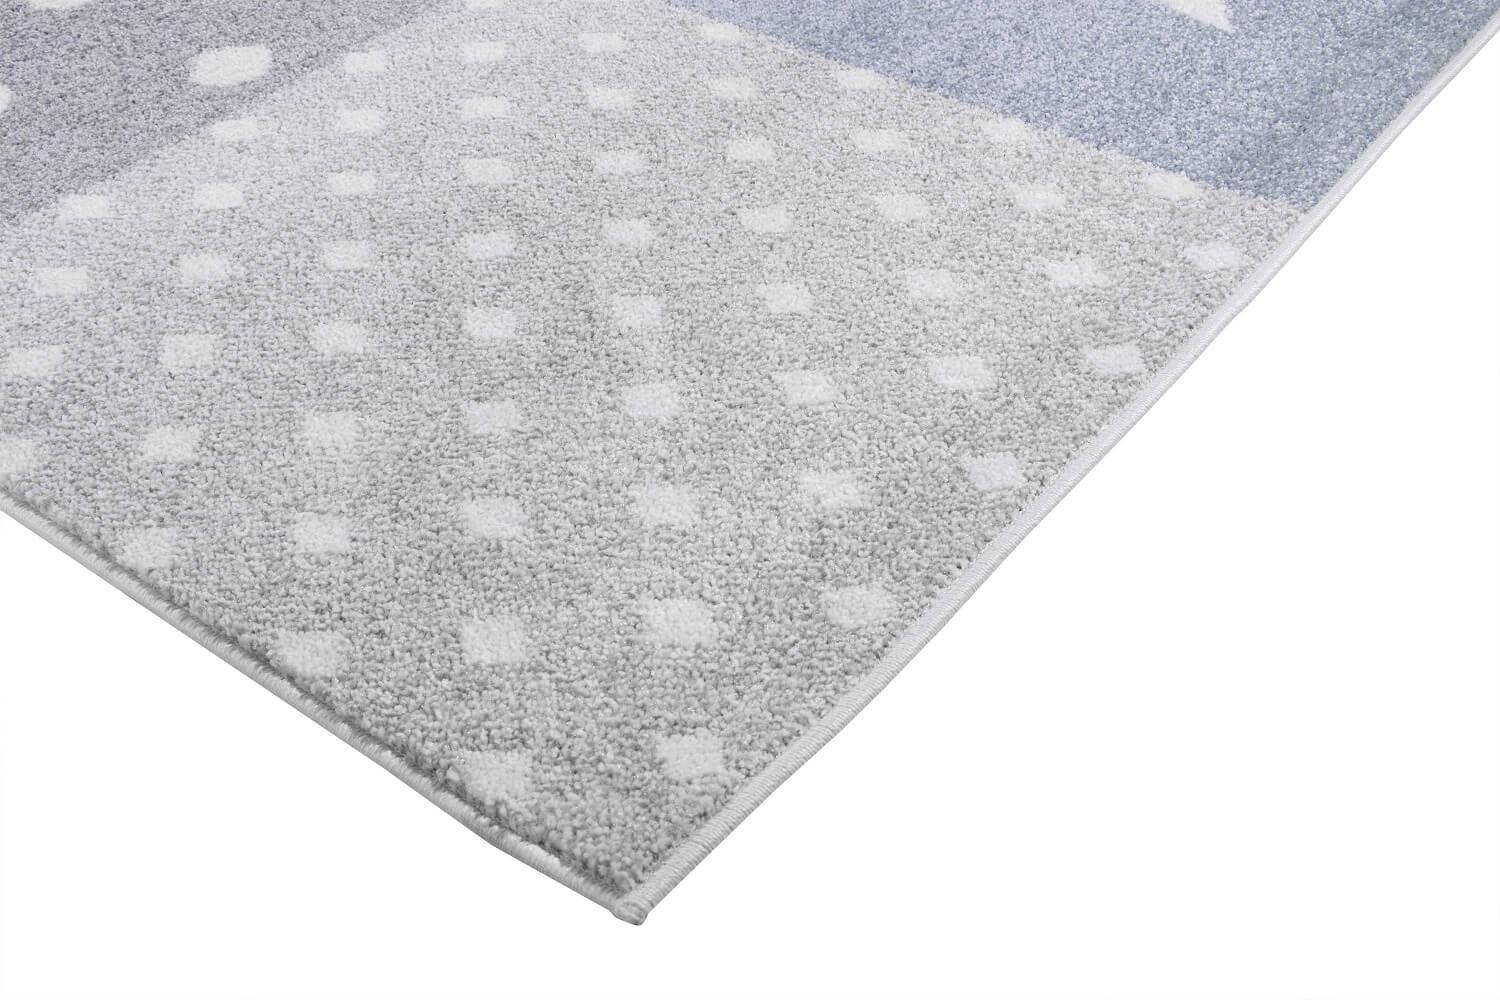 Dekoratívny modro-šedý detský koberec Easy Shapes so srdiečkami, hviezdami a bodkami - Carpetforyou obrázok 3